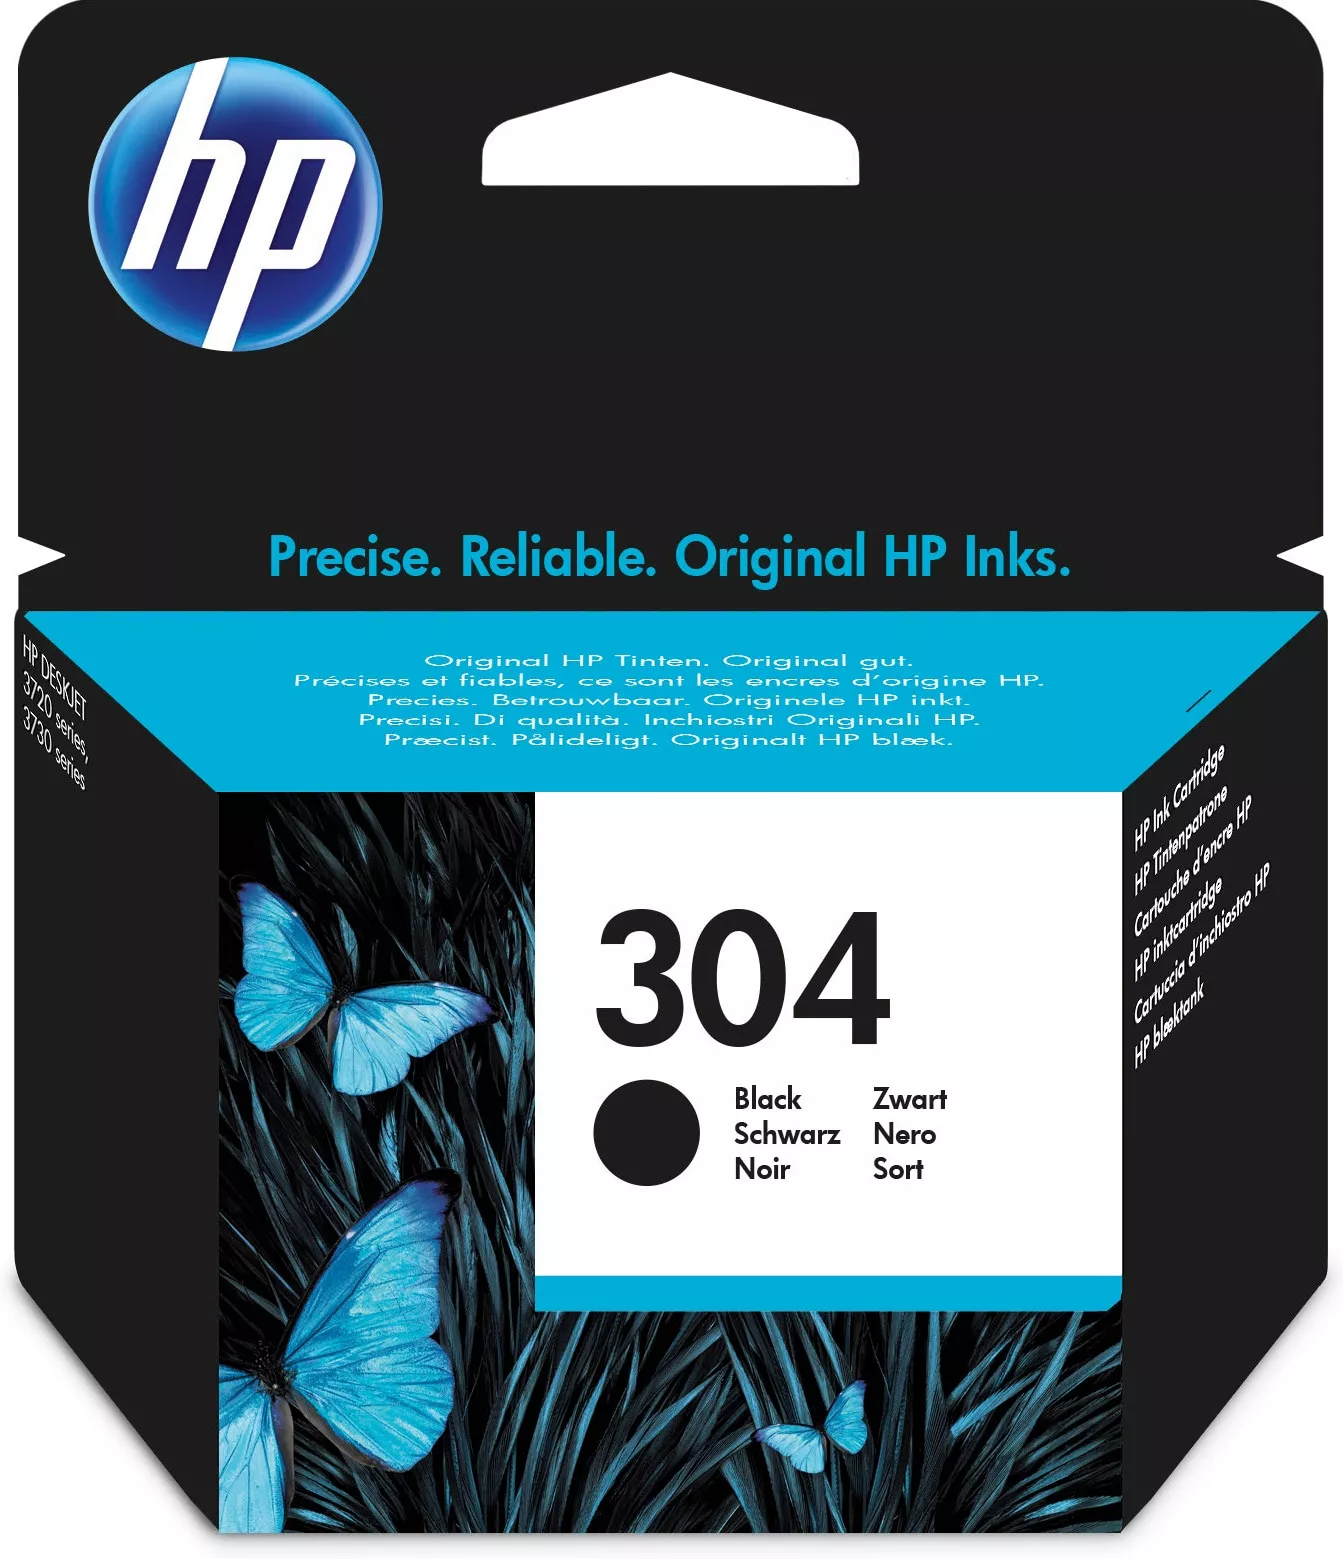 Achat HP 304 original Black Ink cartridge N9K06AE UUS au meilleur prix